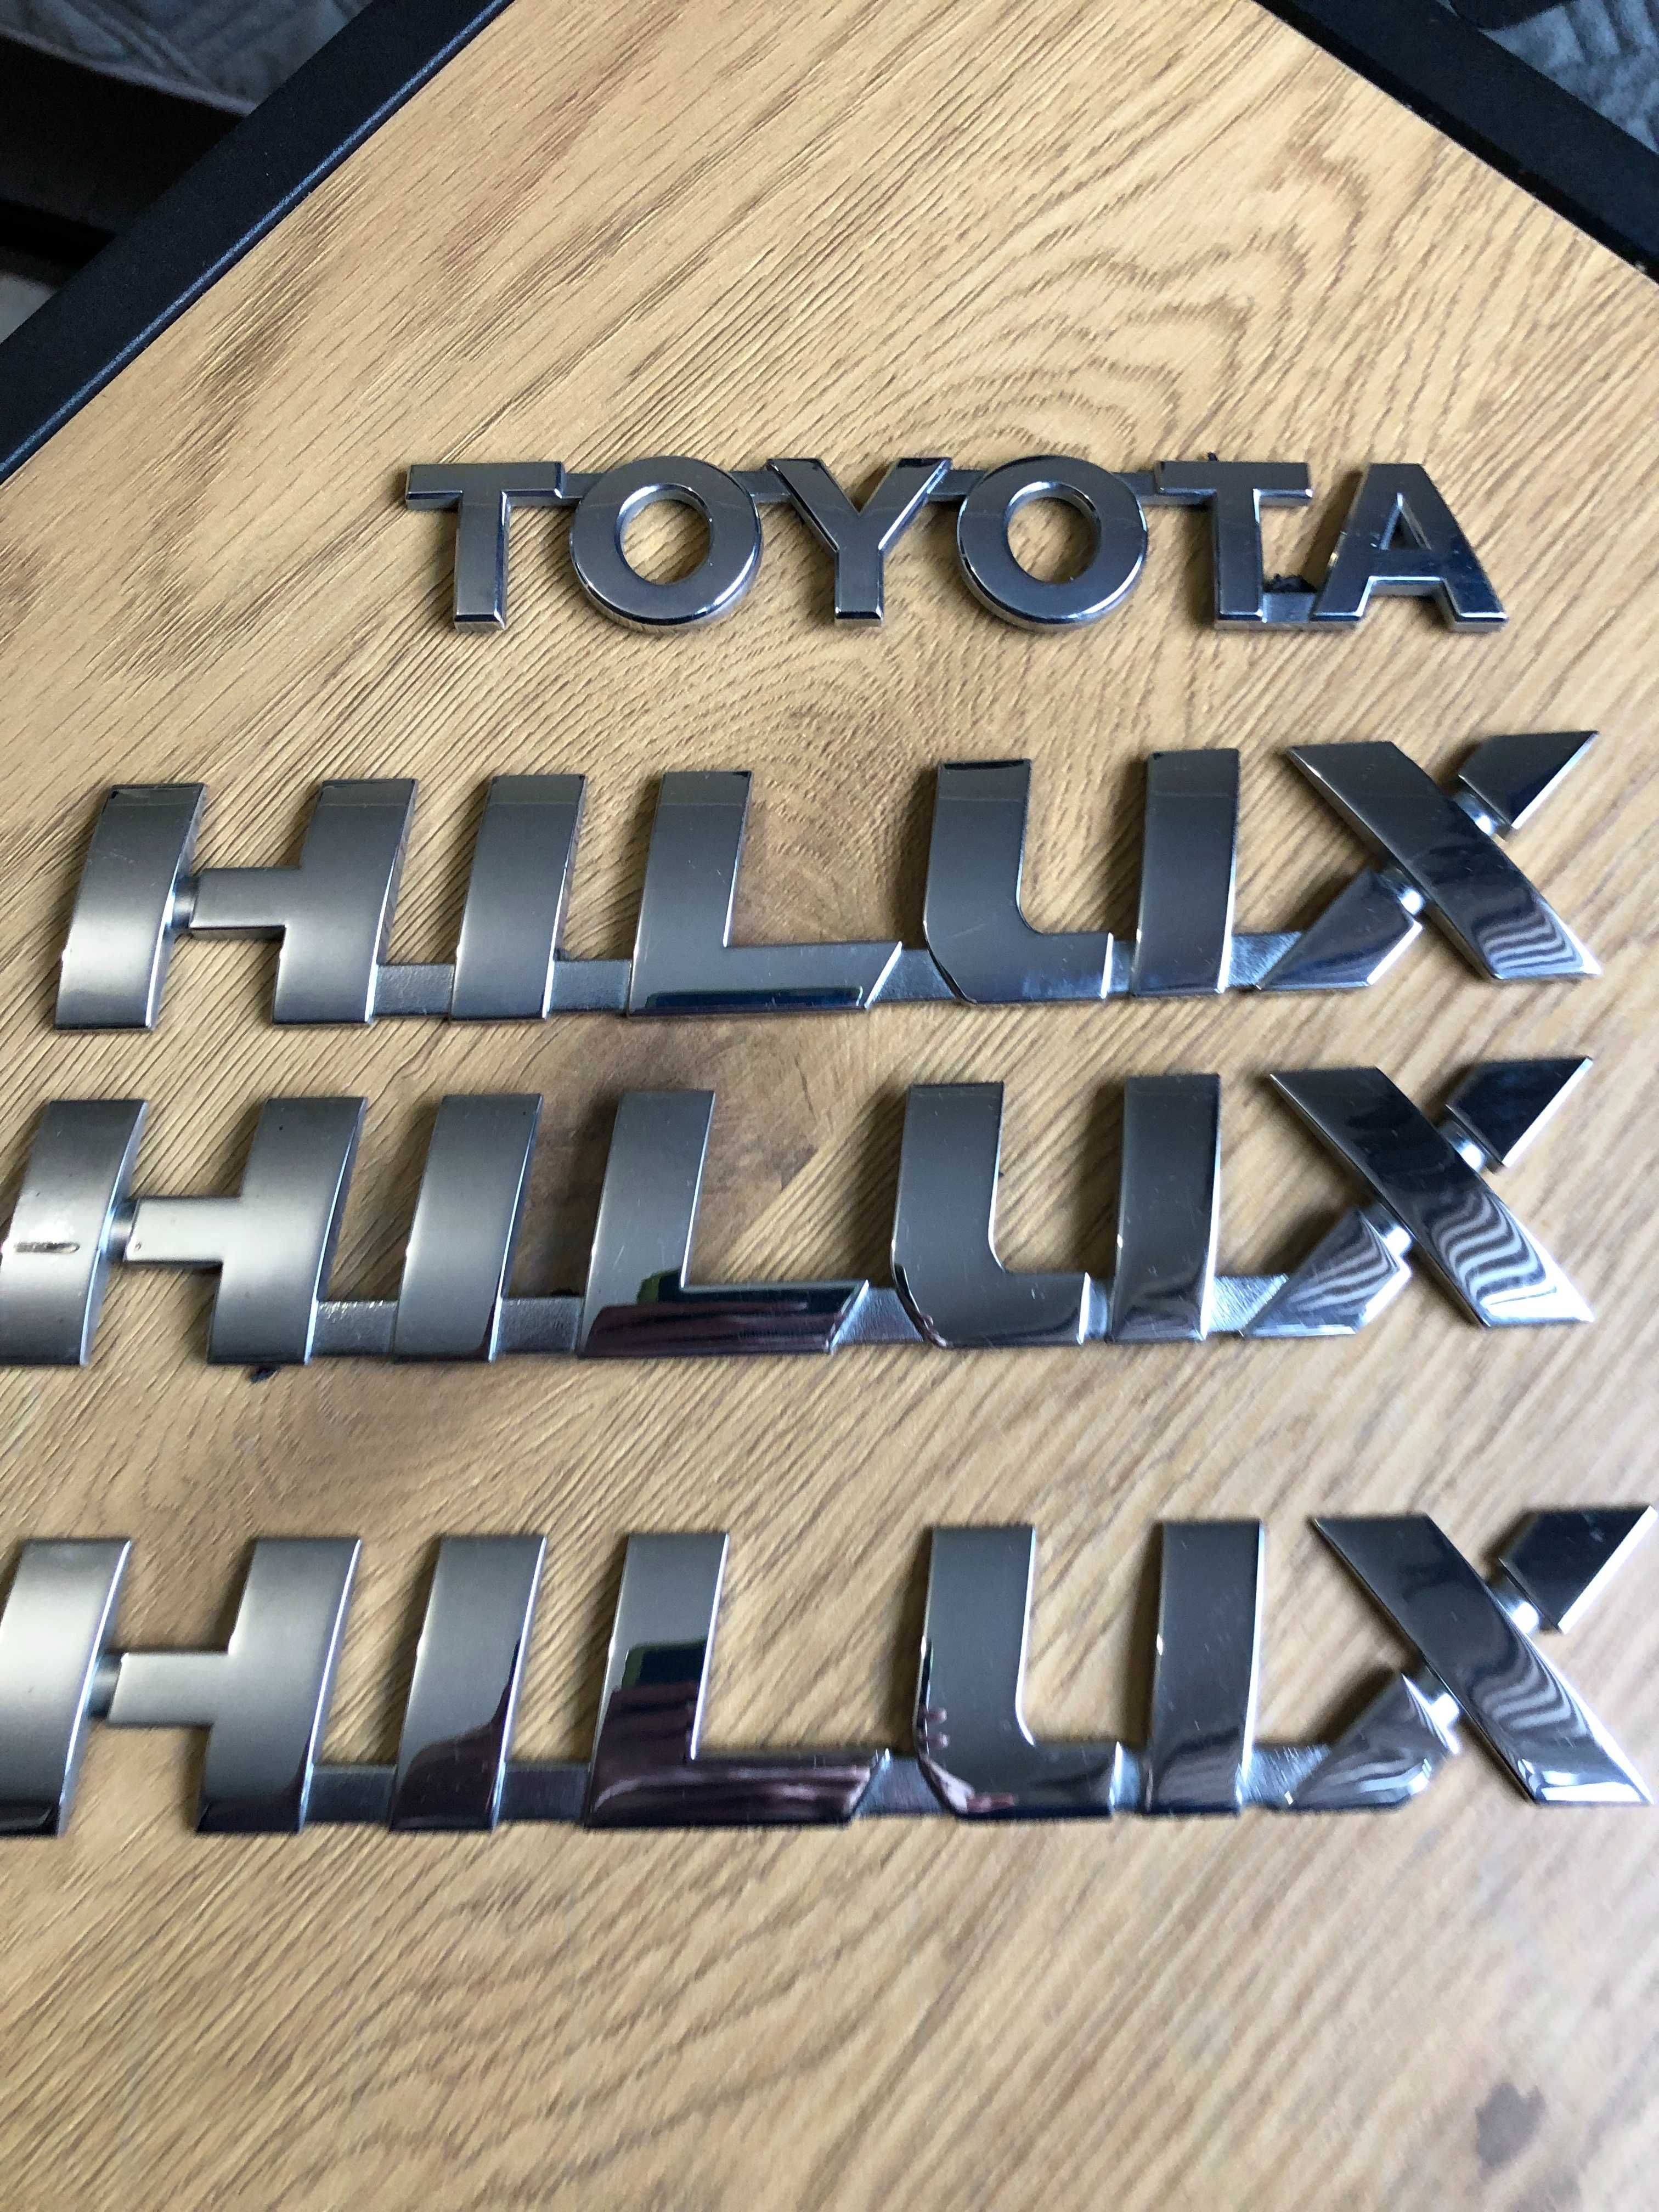 emblemat znaczek napis logo Toyota HILUX